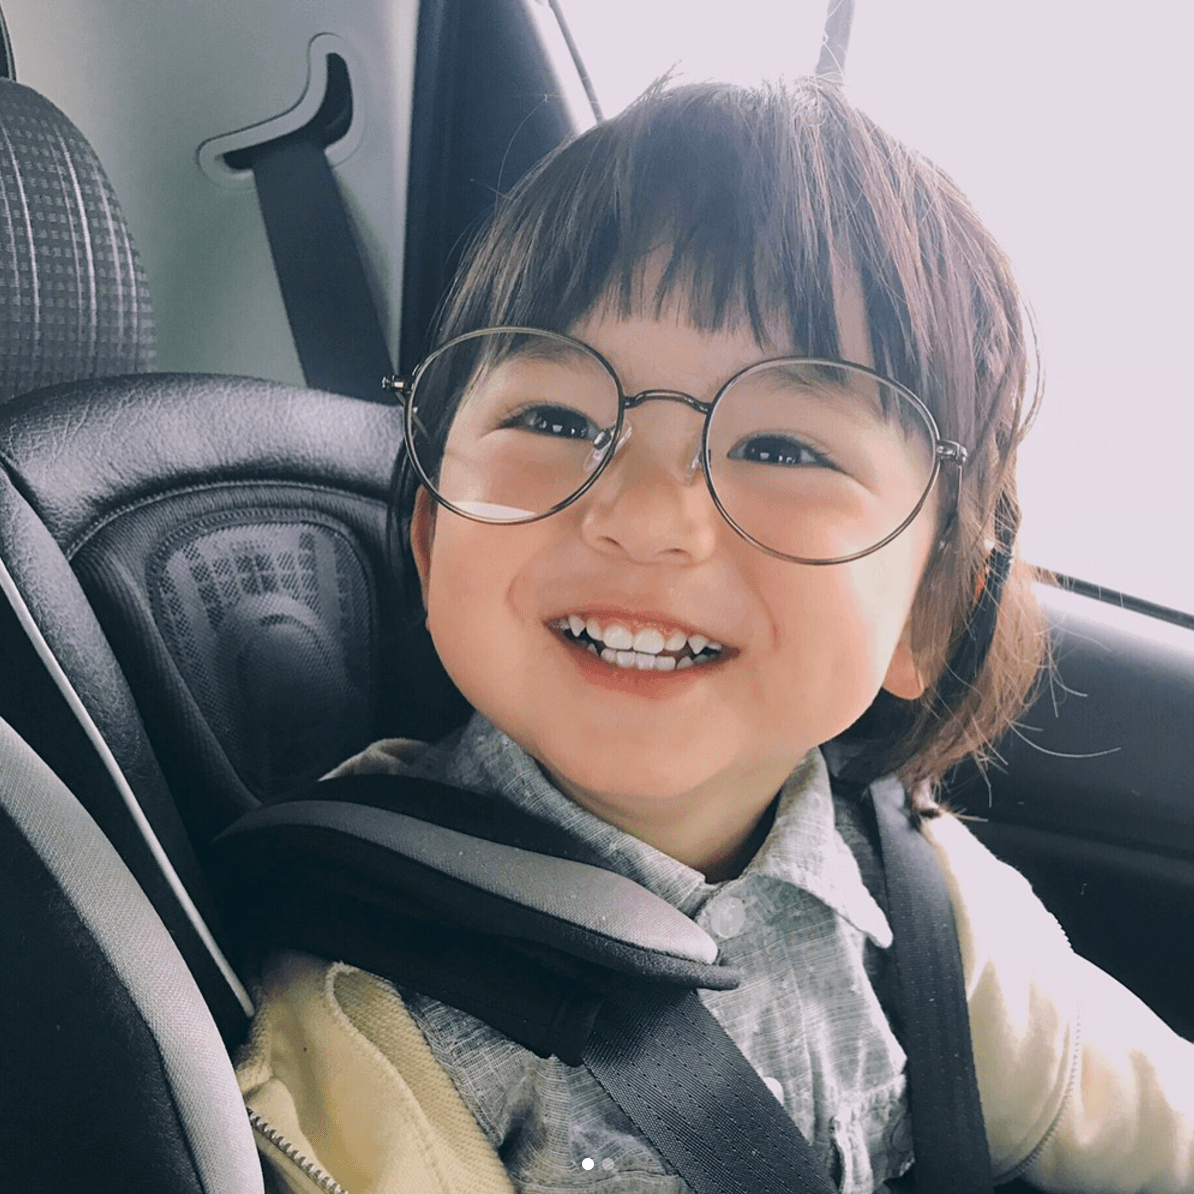 Em bé Nhật instagram với nụ cười ngọt ngào sẽ khiến bạn yêu ngay từ cái nhìn đầu tiên. Hãy cùng xem hình ảnh của bé để khám phá cuộc sống đáng yêu và trong sáng của em.